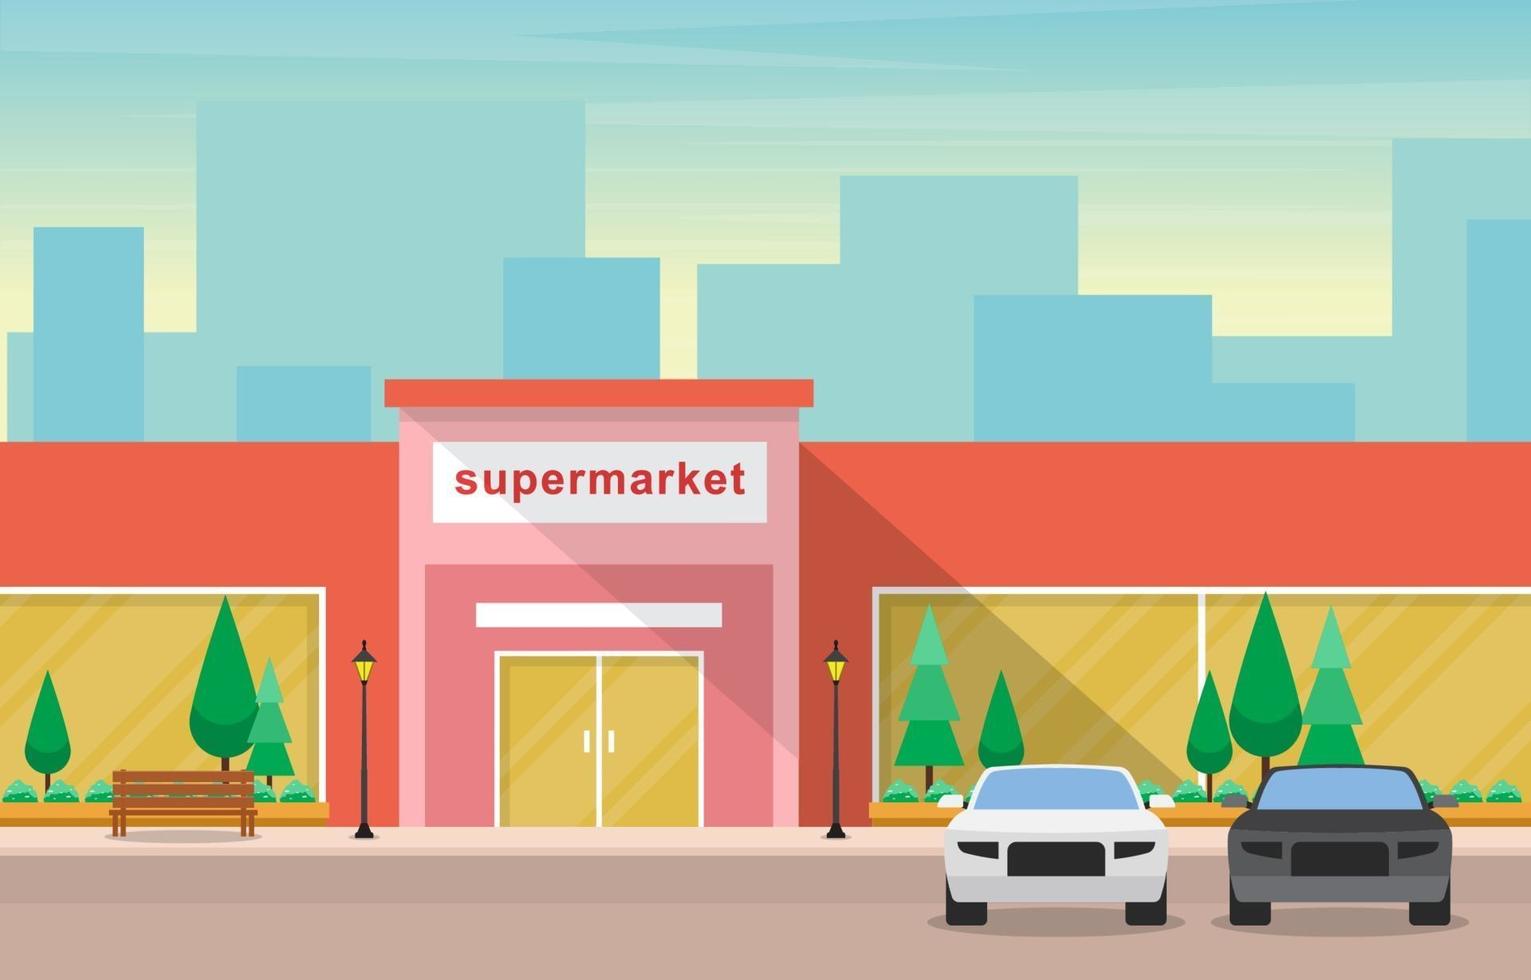 épicerie de supermarché en illustration plat ville vecteur